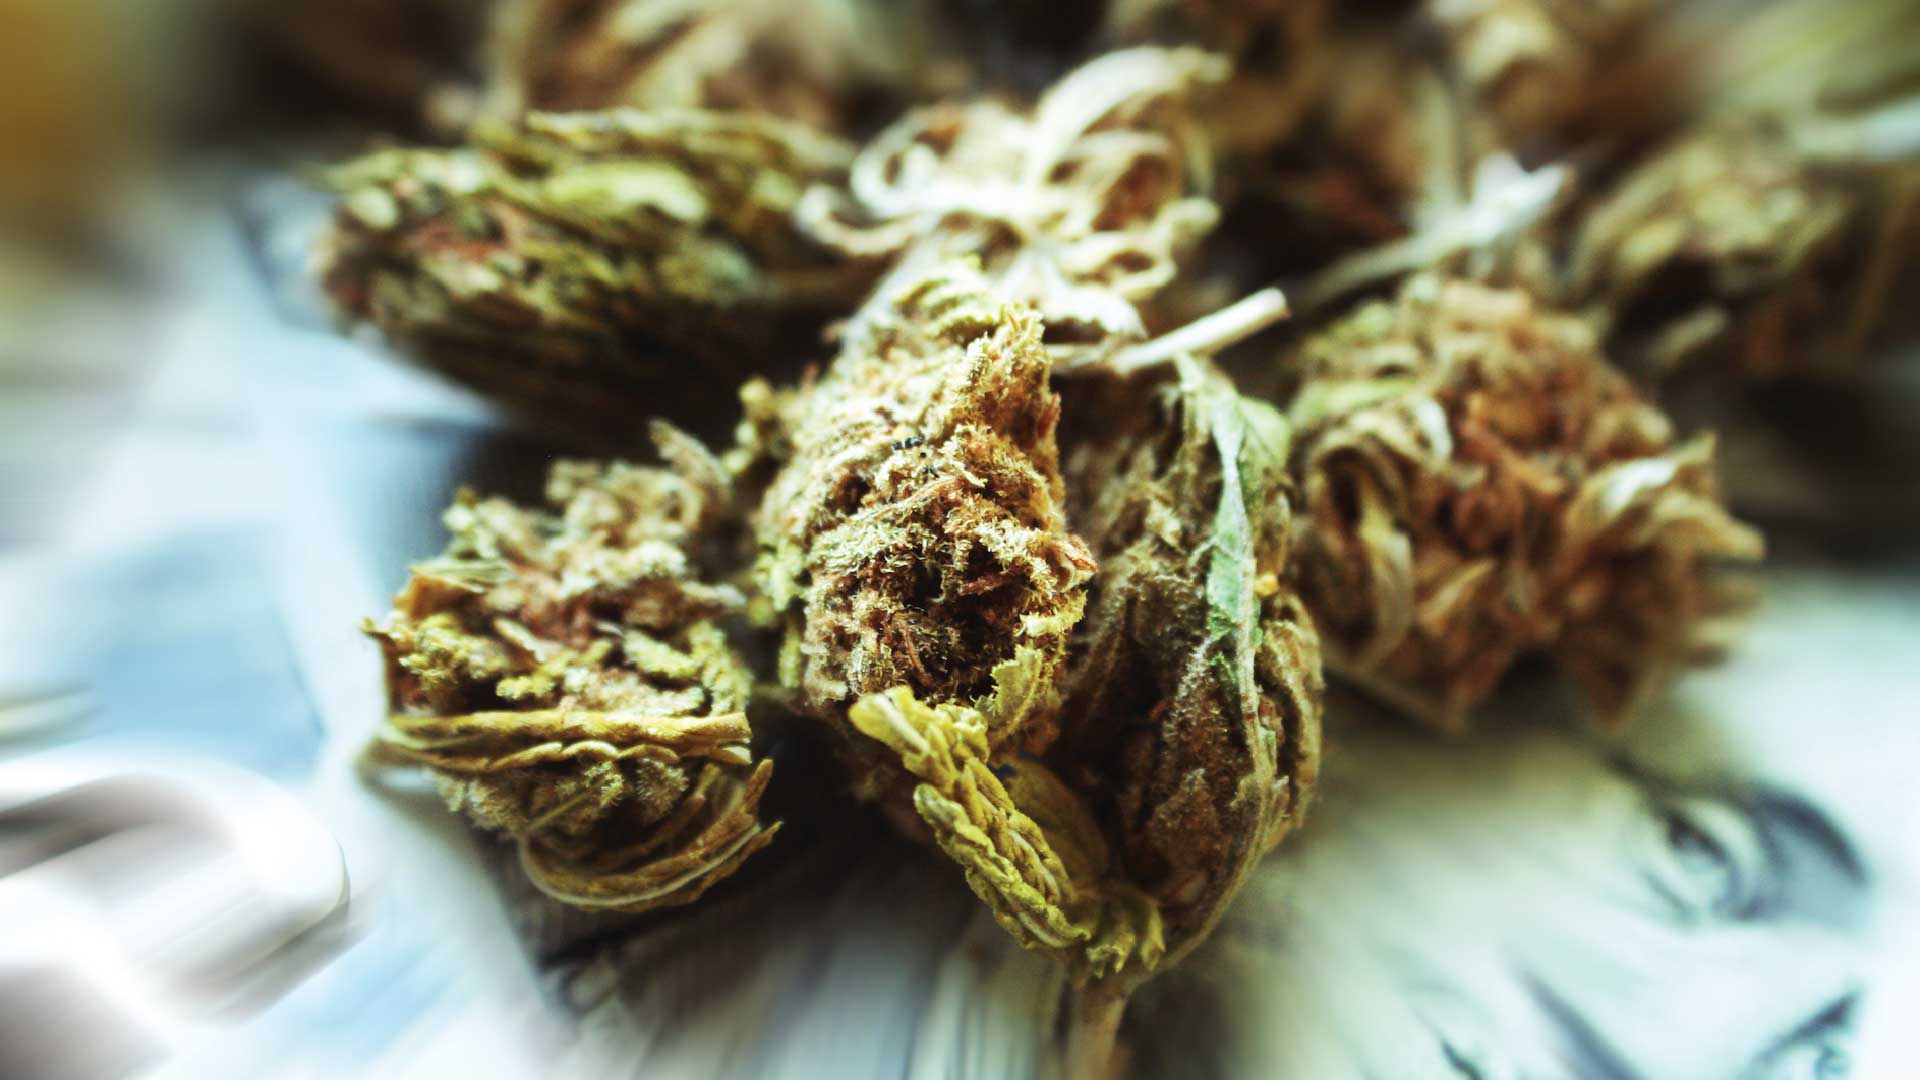 Moldy marijuana: When pot goes to rot